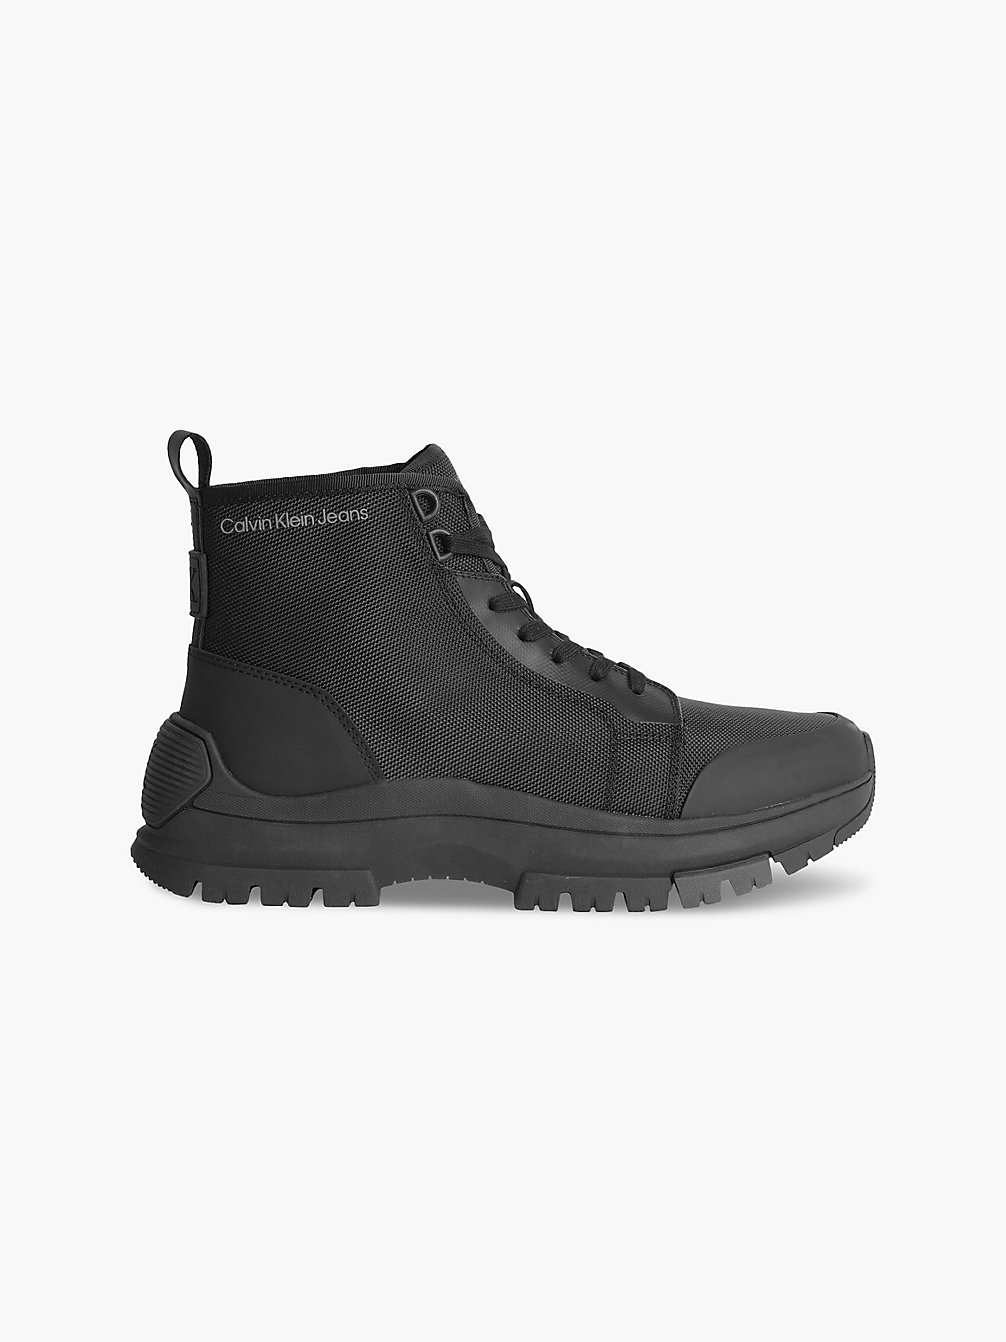 BLACK > Recycelte Hybrid Boots > undefined Herren - Calvin Klein